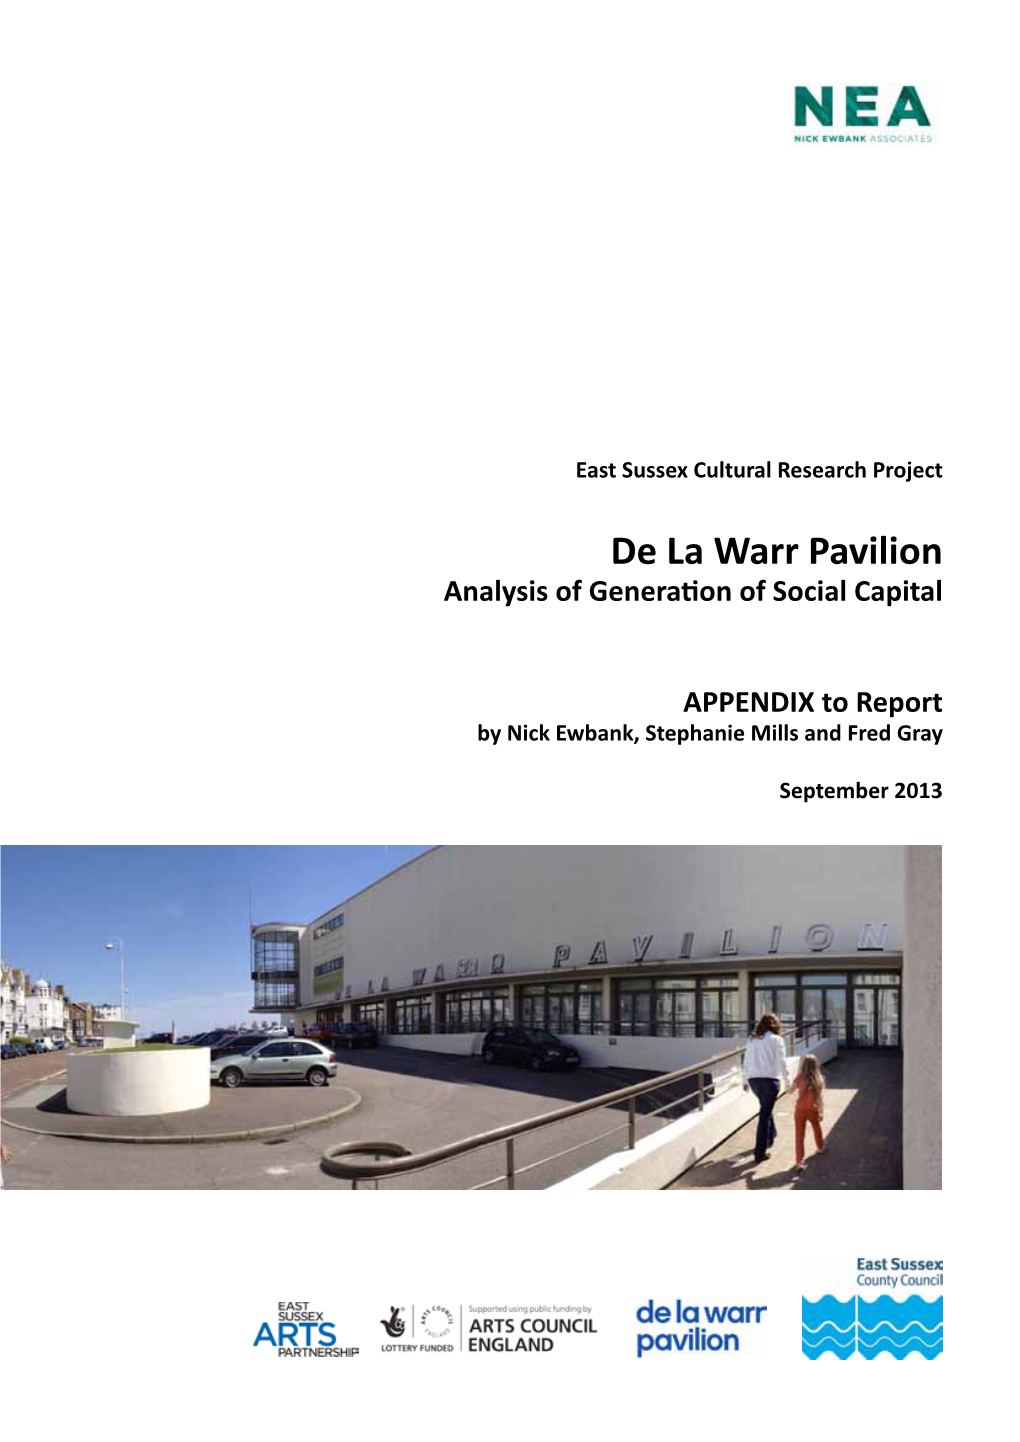 Social Capital & the De La Warr Pavilion